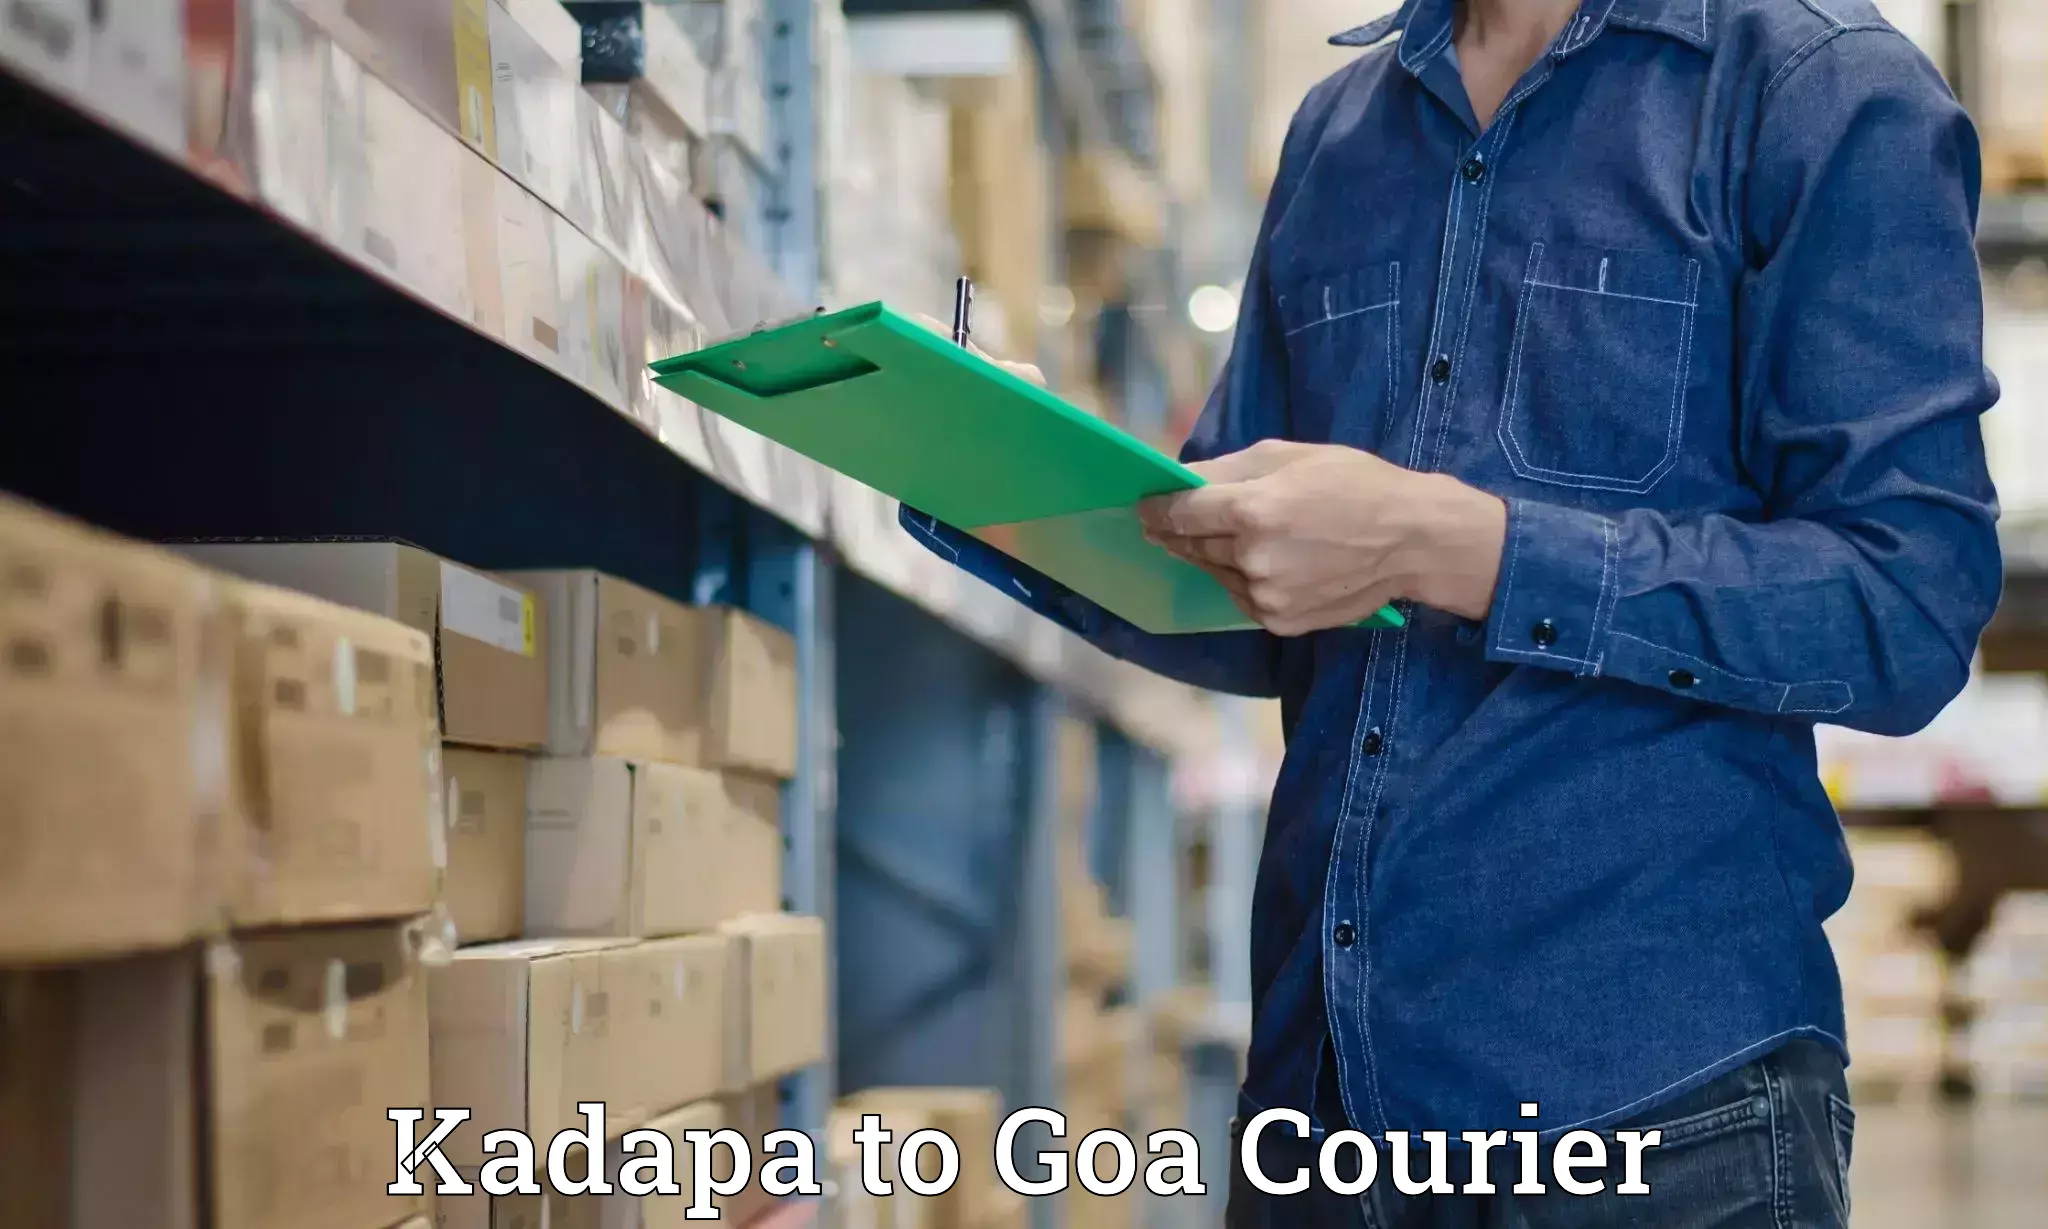 Nationwide shipping capabilities Kadapa to Margao